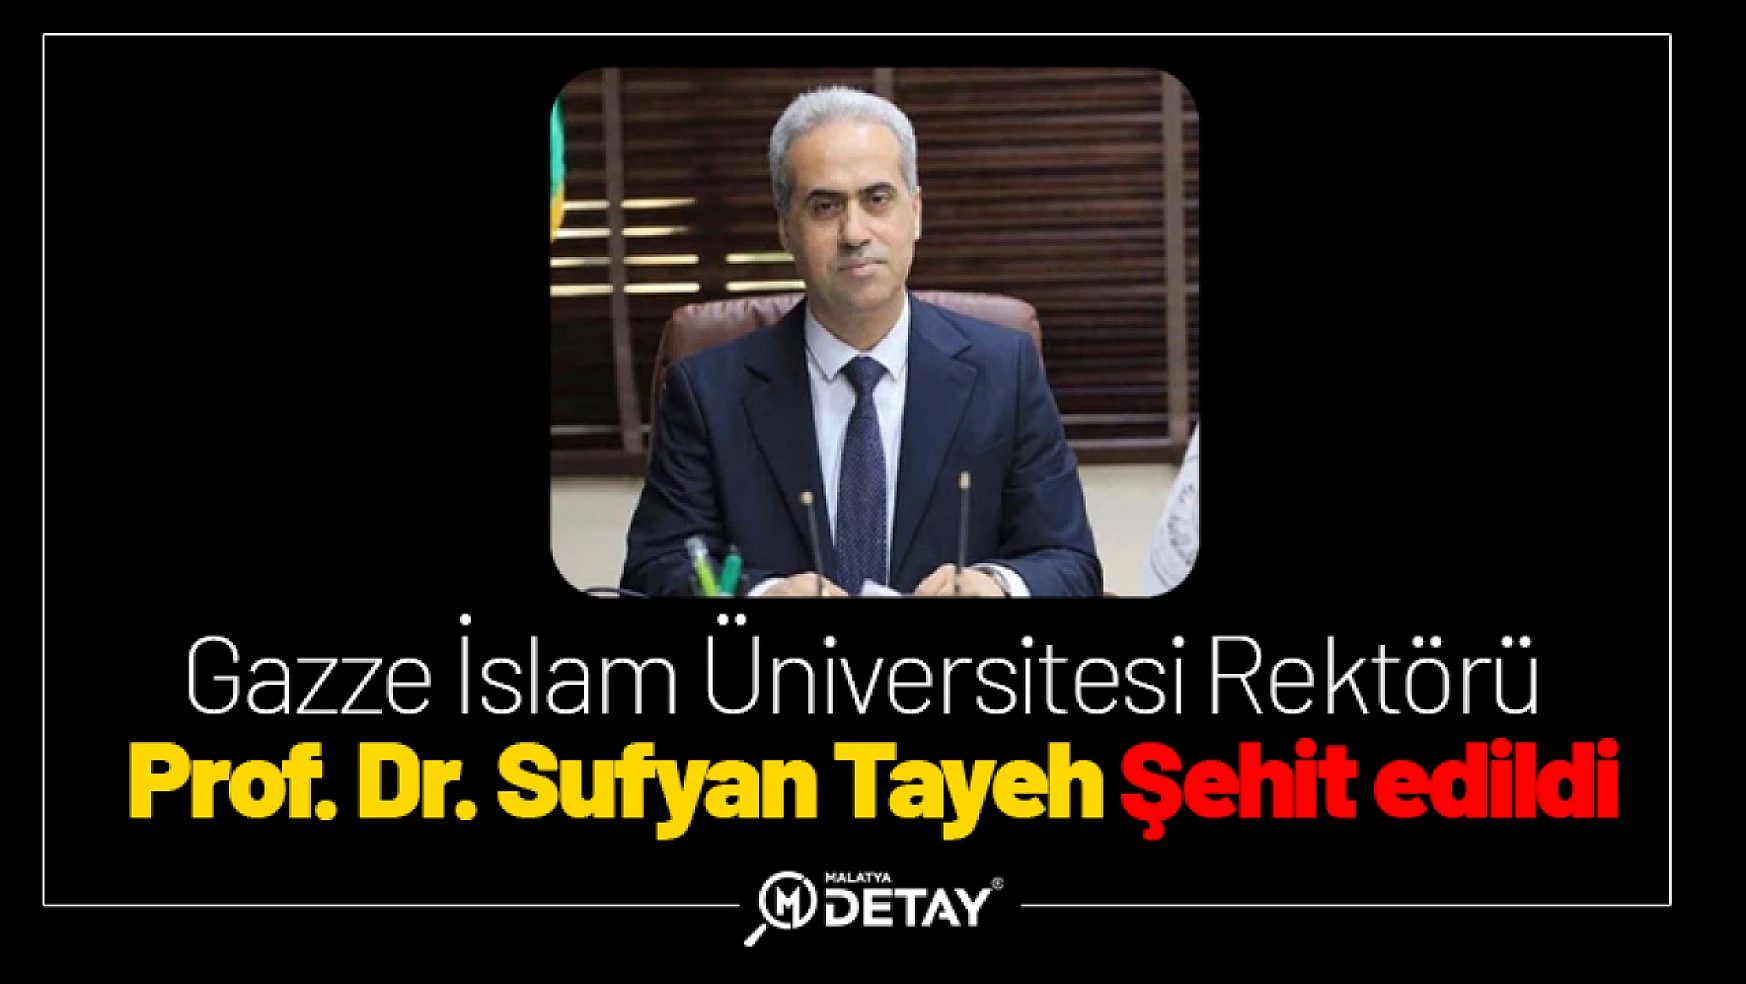 Gazze İslam Üniversitesi Rektörü Prof. Dr. Sufyan Tayeh Şehit edildi.